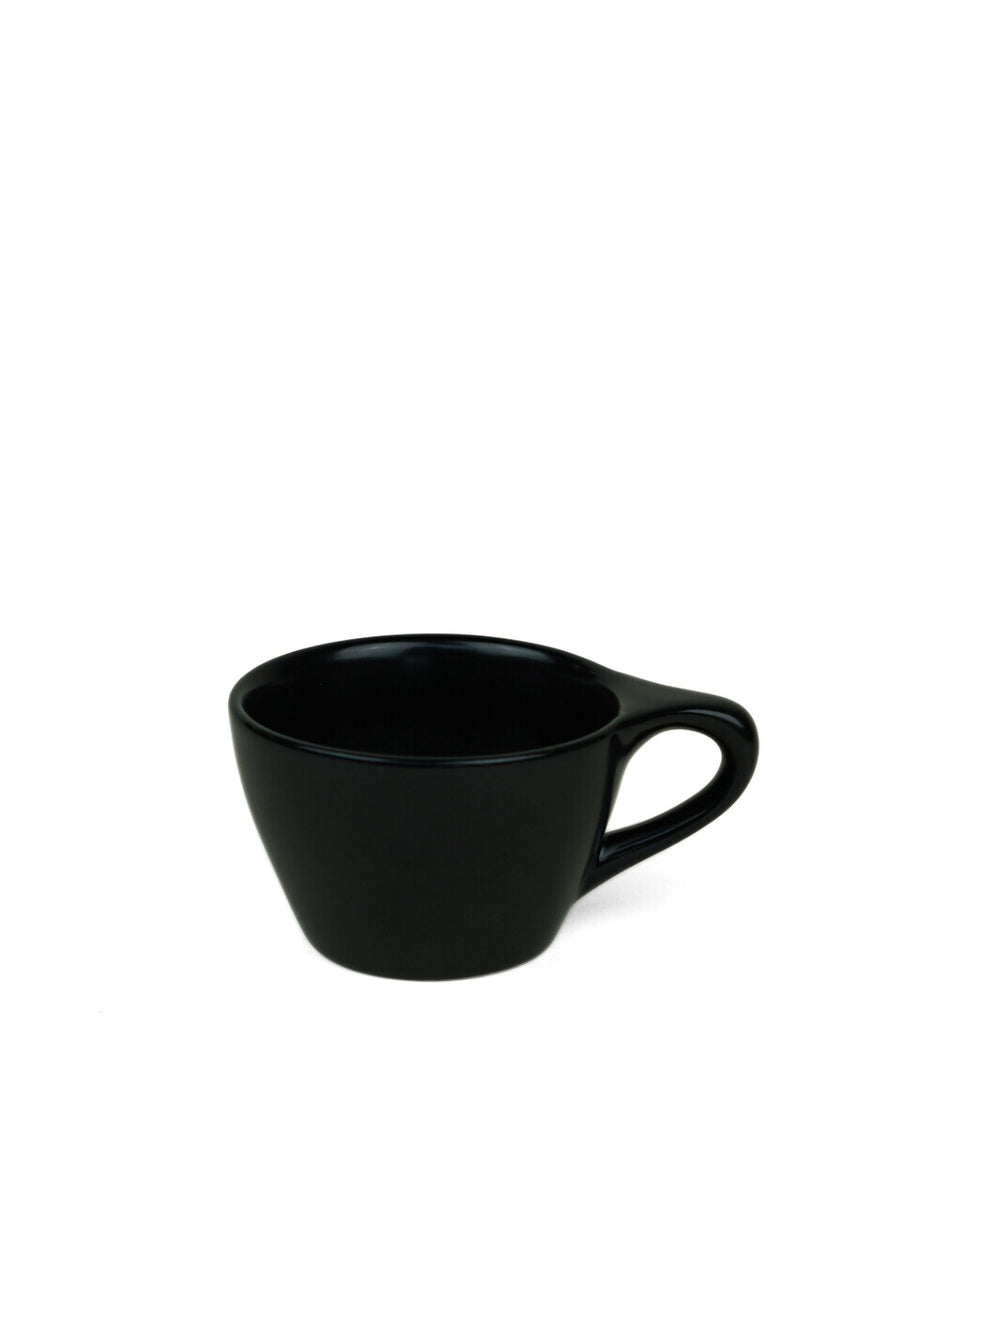 https://eightouncecoffee.ca/cdn/shop/files/notneutral_lino-double-cappuccino-cup-6oz_black.jpg?v=1702484641&width=1000